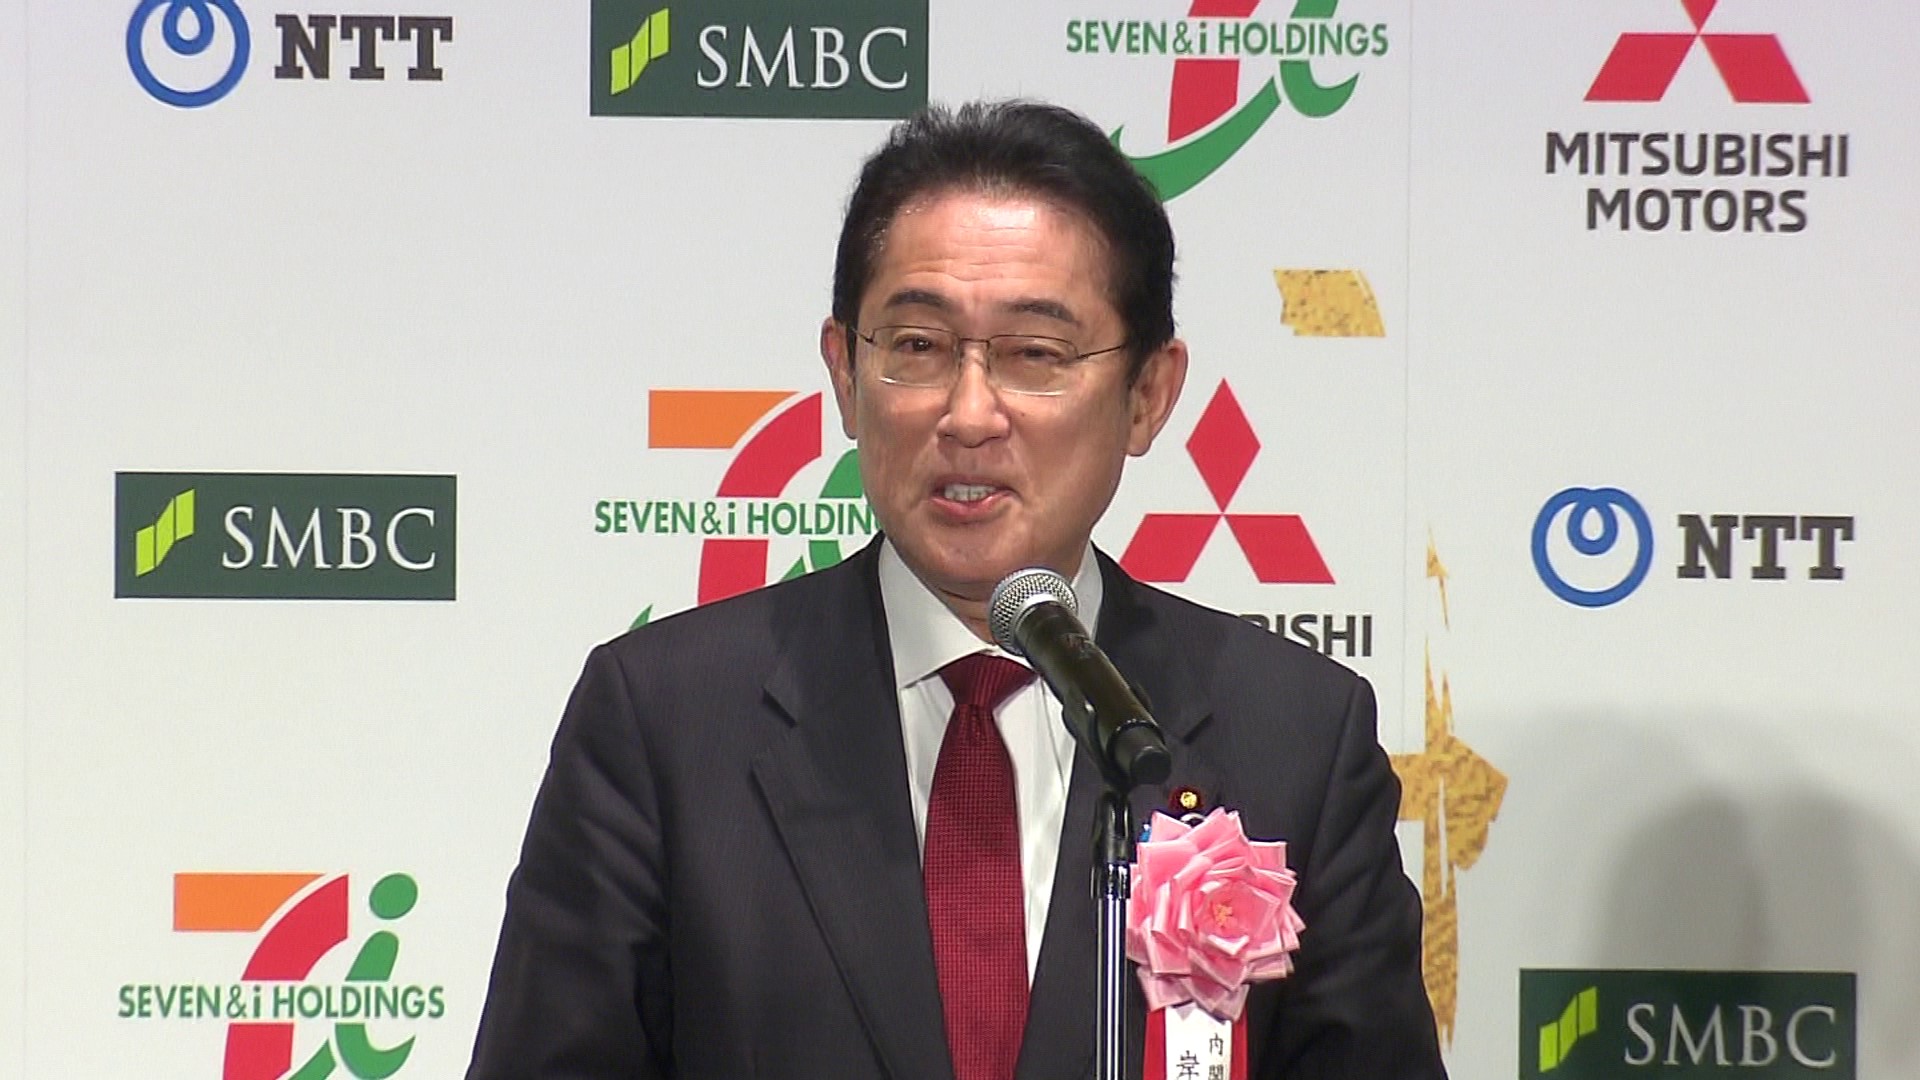 Prime Minister Kishida delivering a congratulatory address